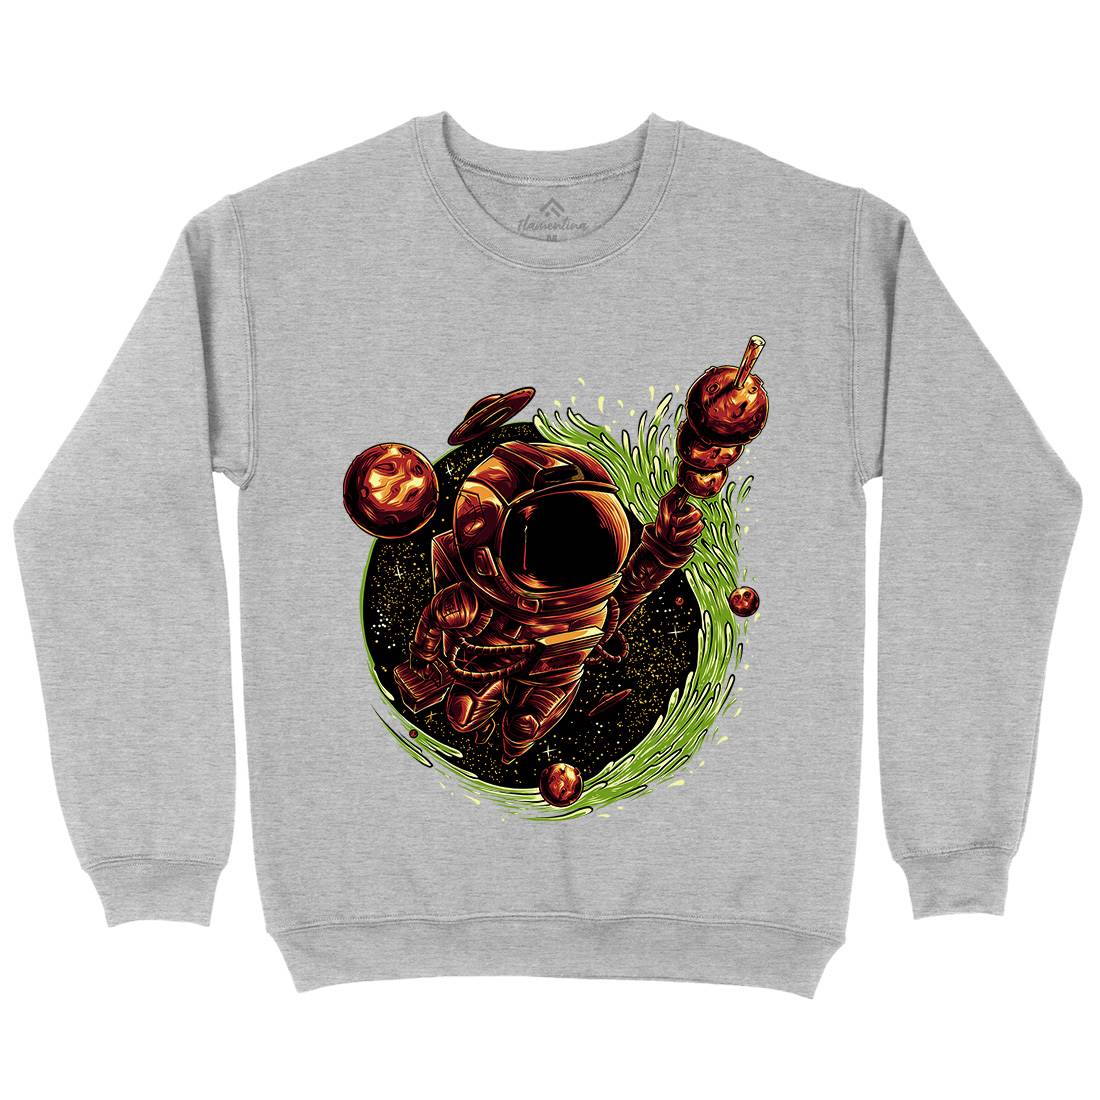 Grilled Meatball Kids Crew Neck Sweatshirt Space D037